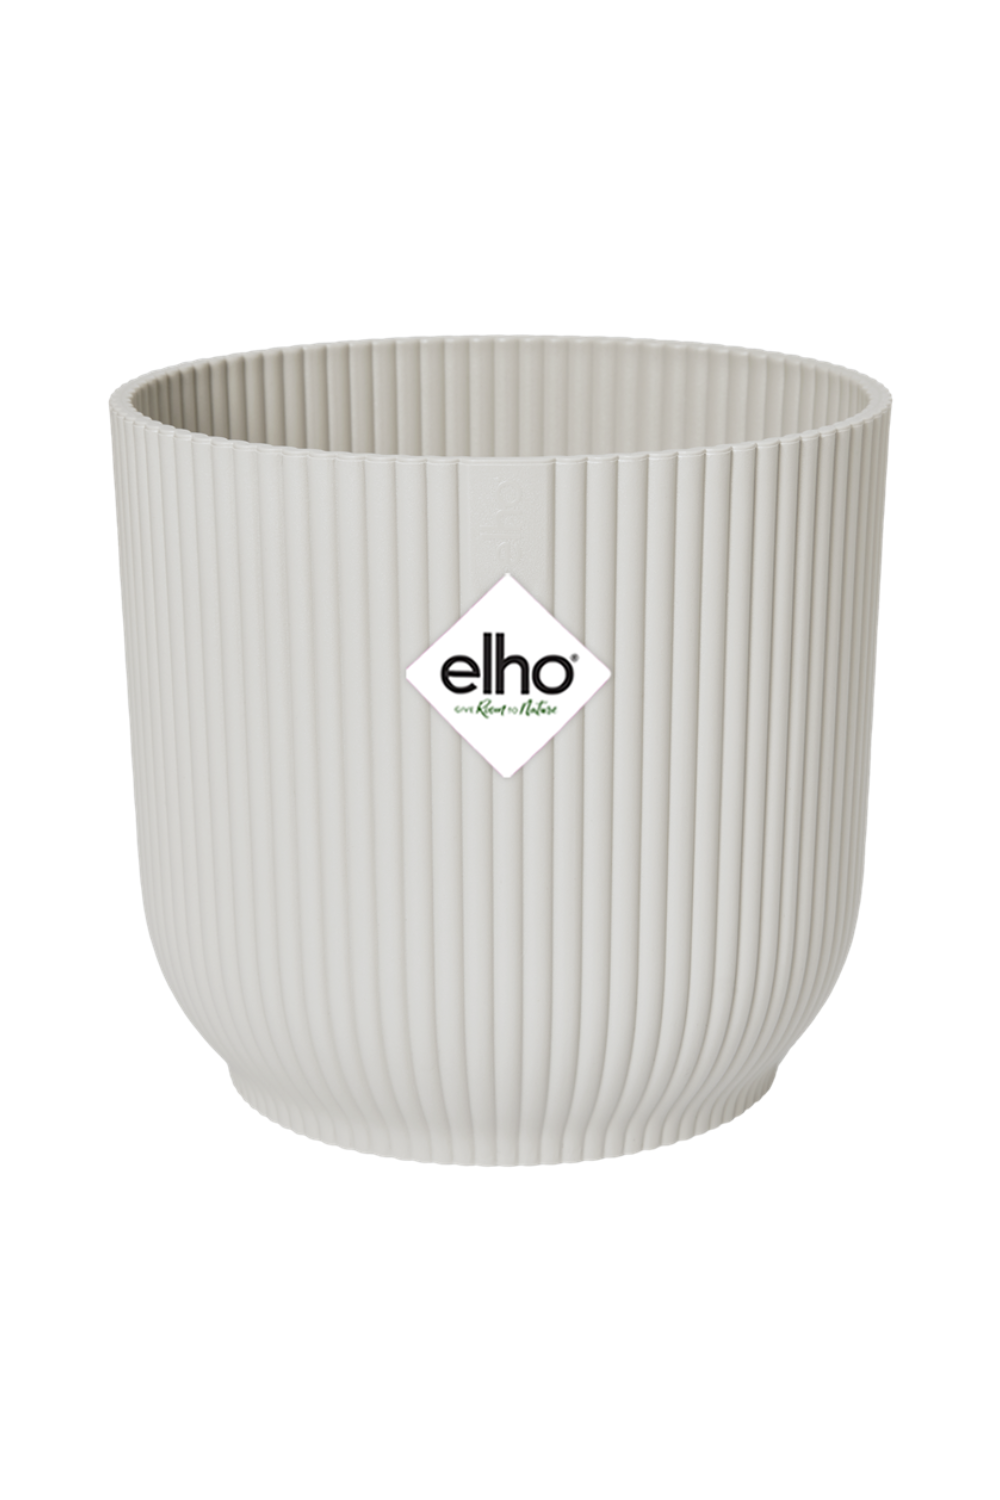 Blumentopf Elho Vibes Fold rund Silky White 16cm